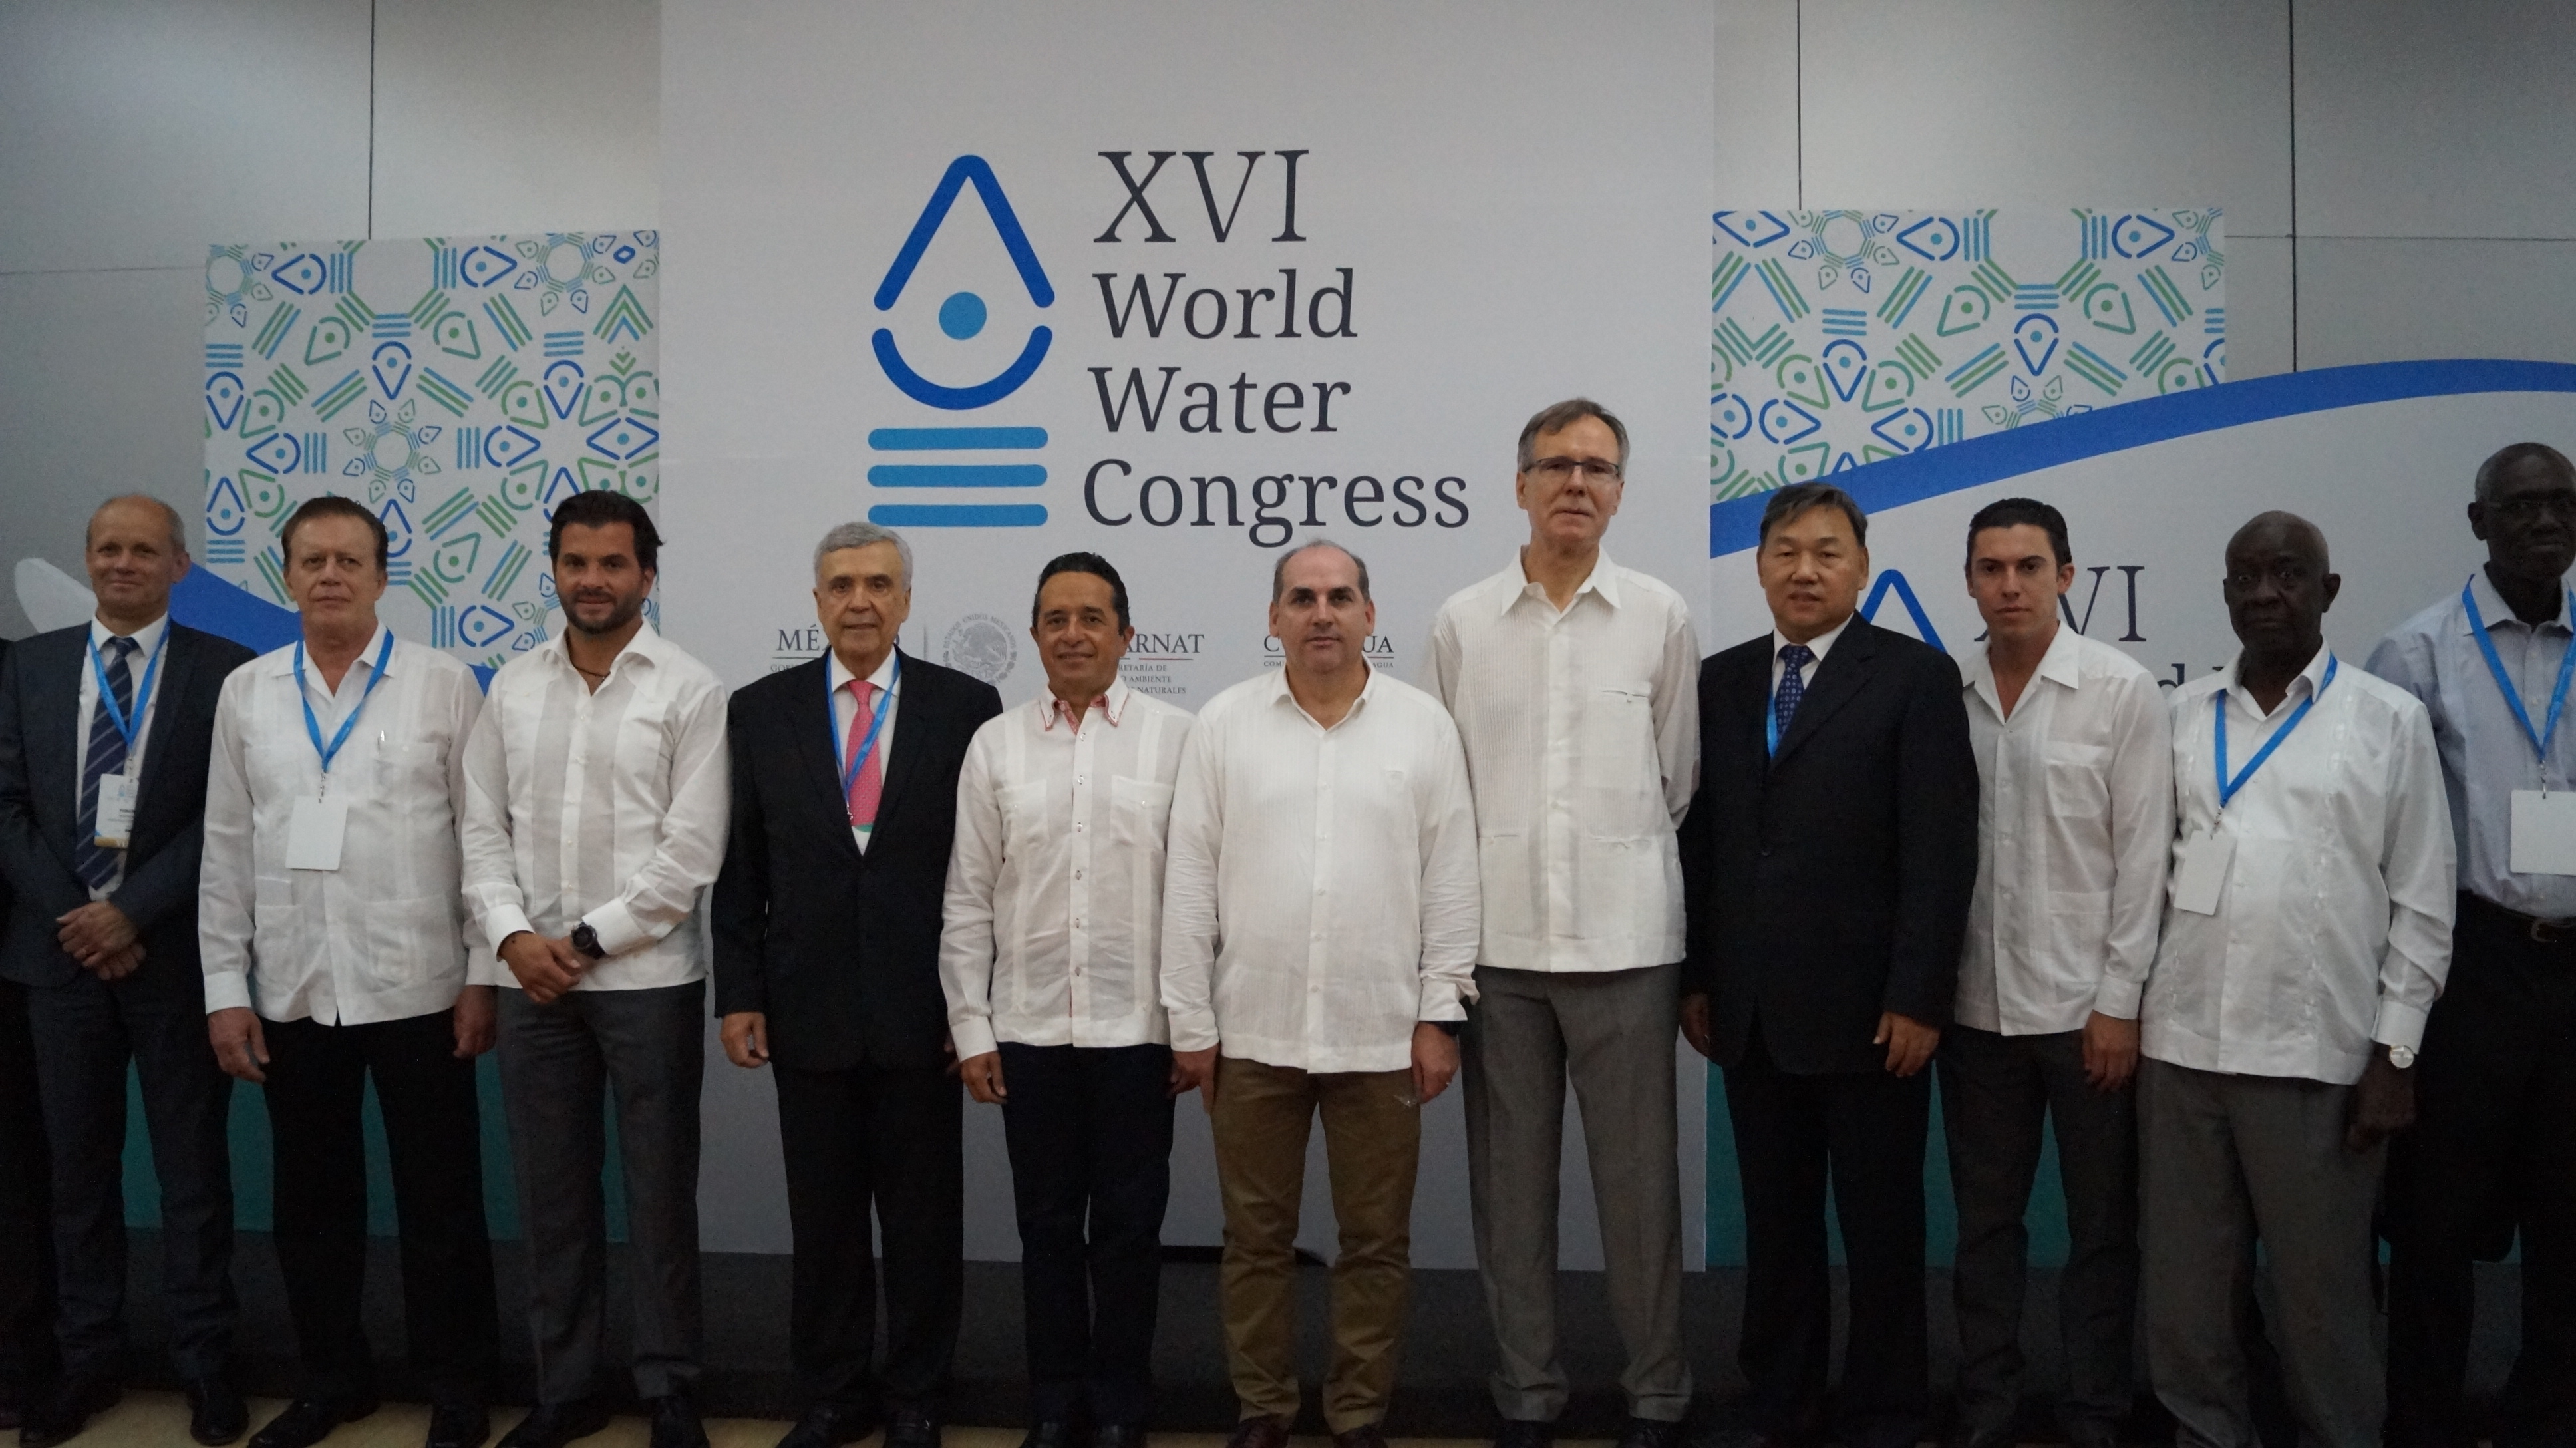 El XVI Congreso Mundial del Agua contribuirá a garantizar la disponibilidad del agua y su gestión sostenible.